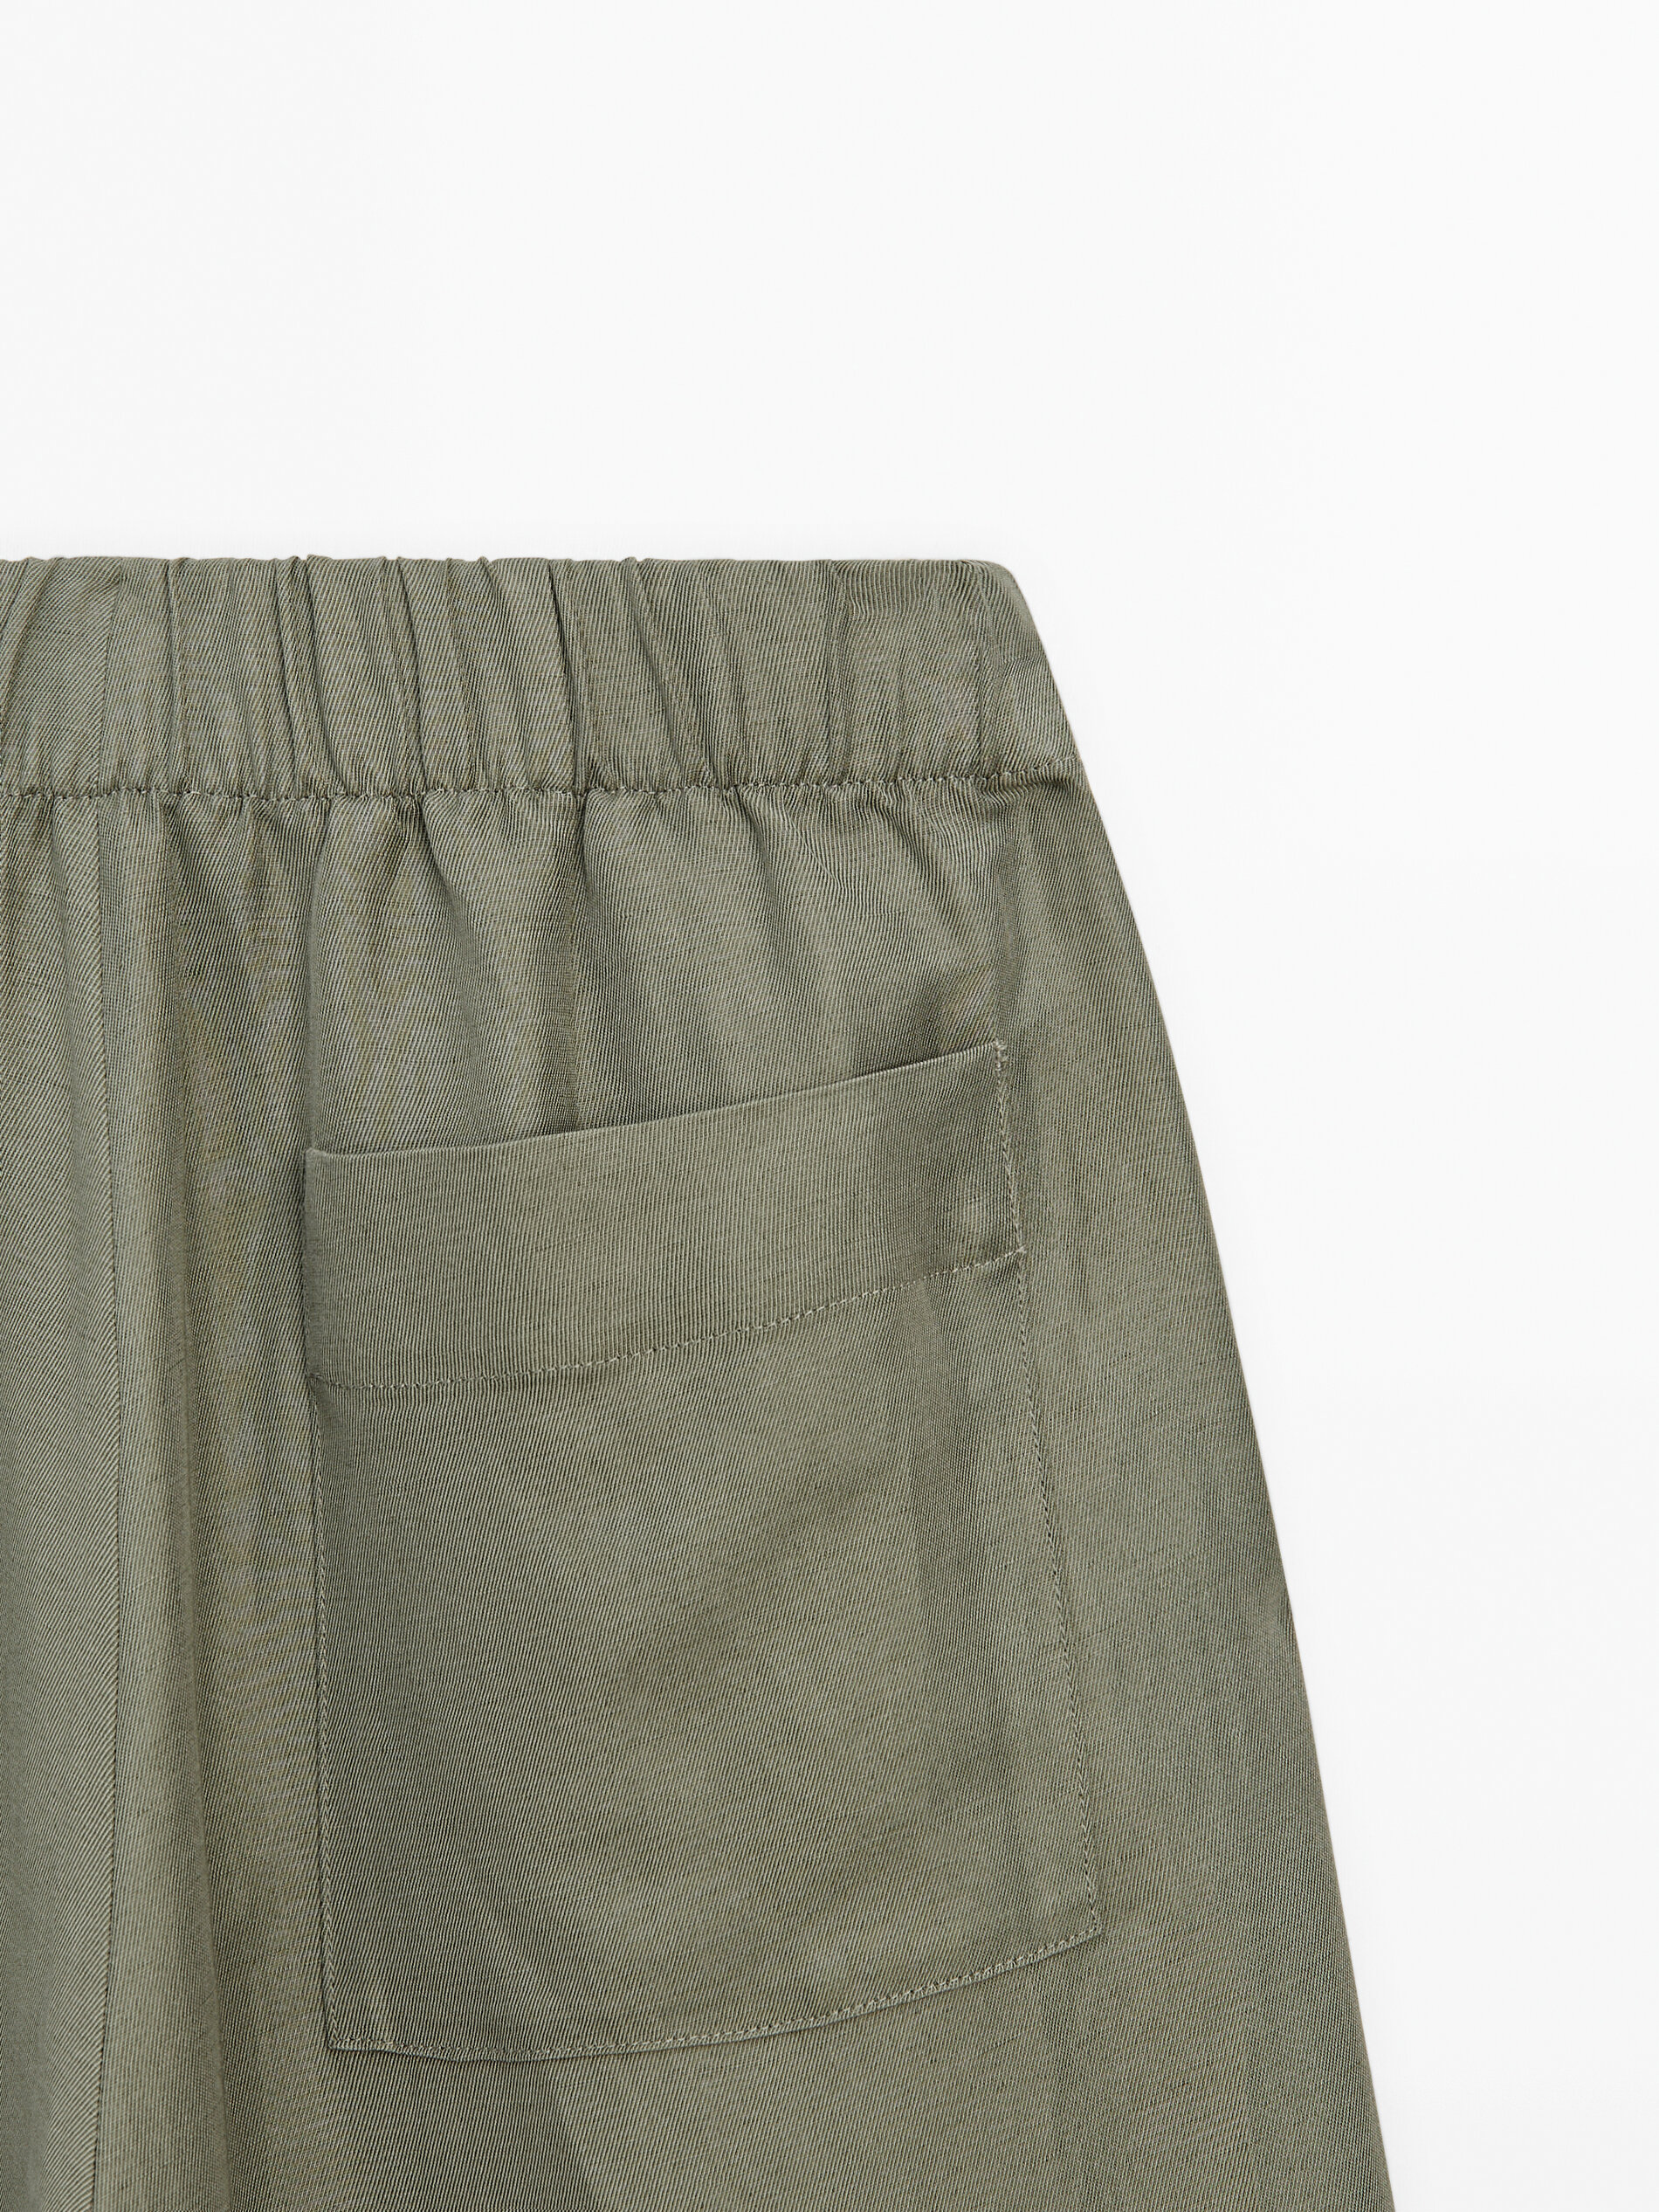 Pantalón ancho cintura elástica conjunto